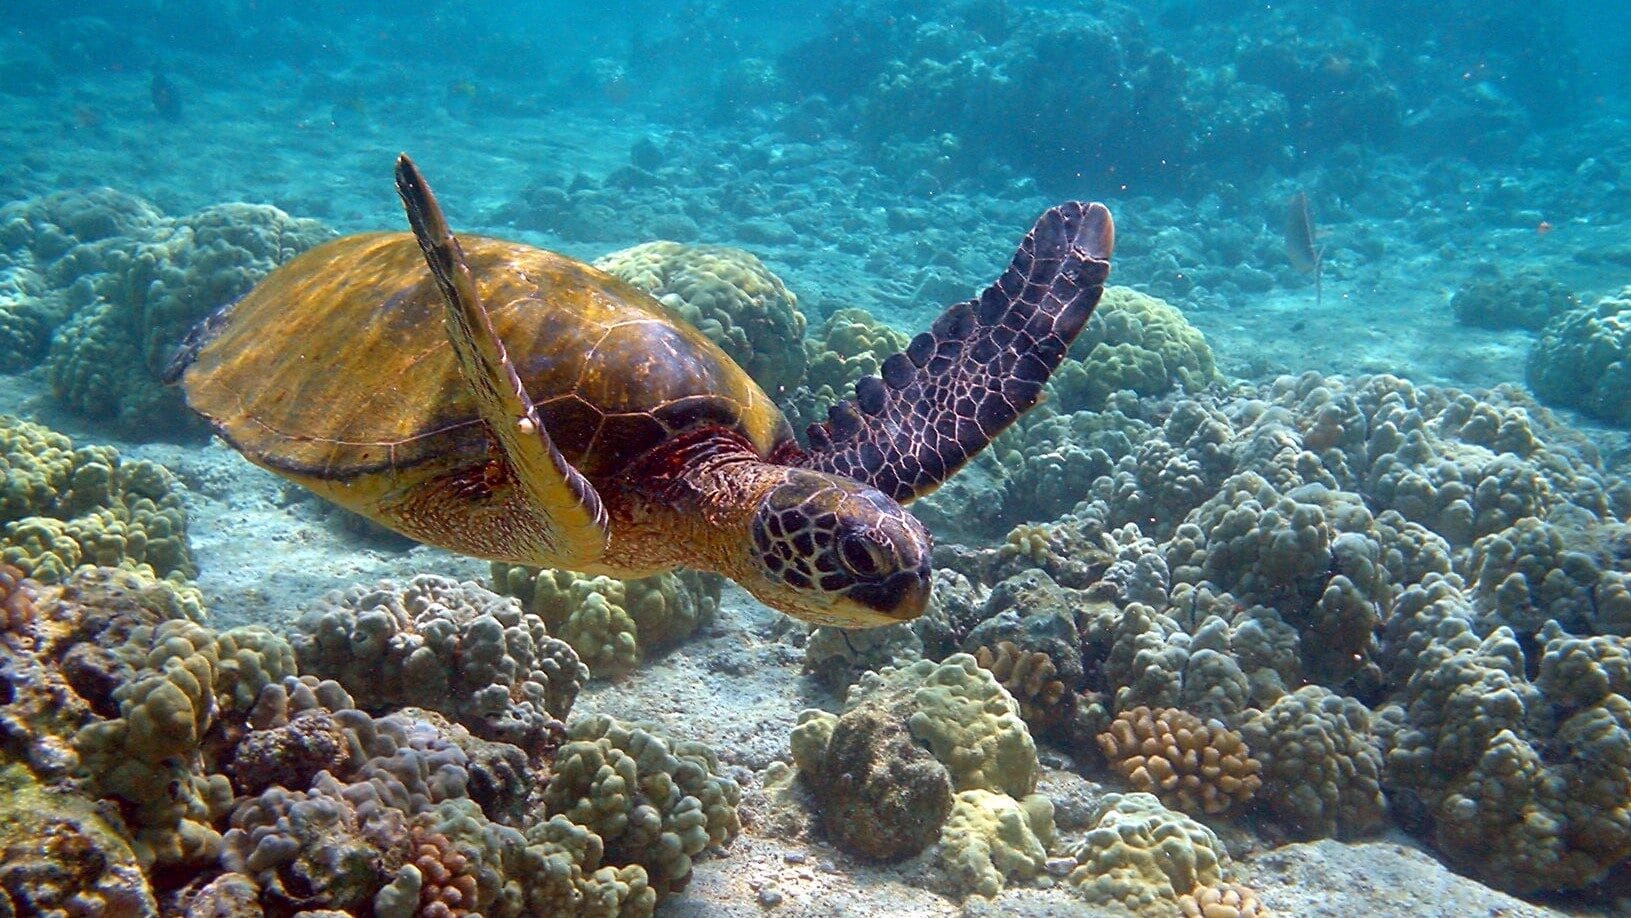 Image: Green sea turtle swimming